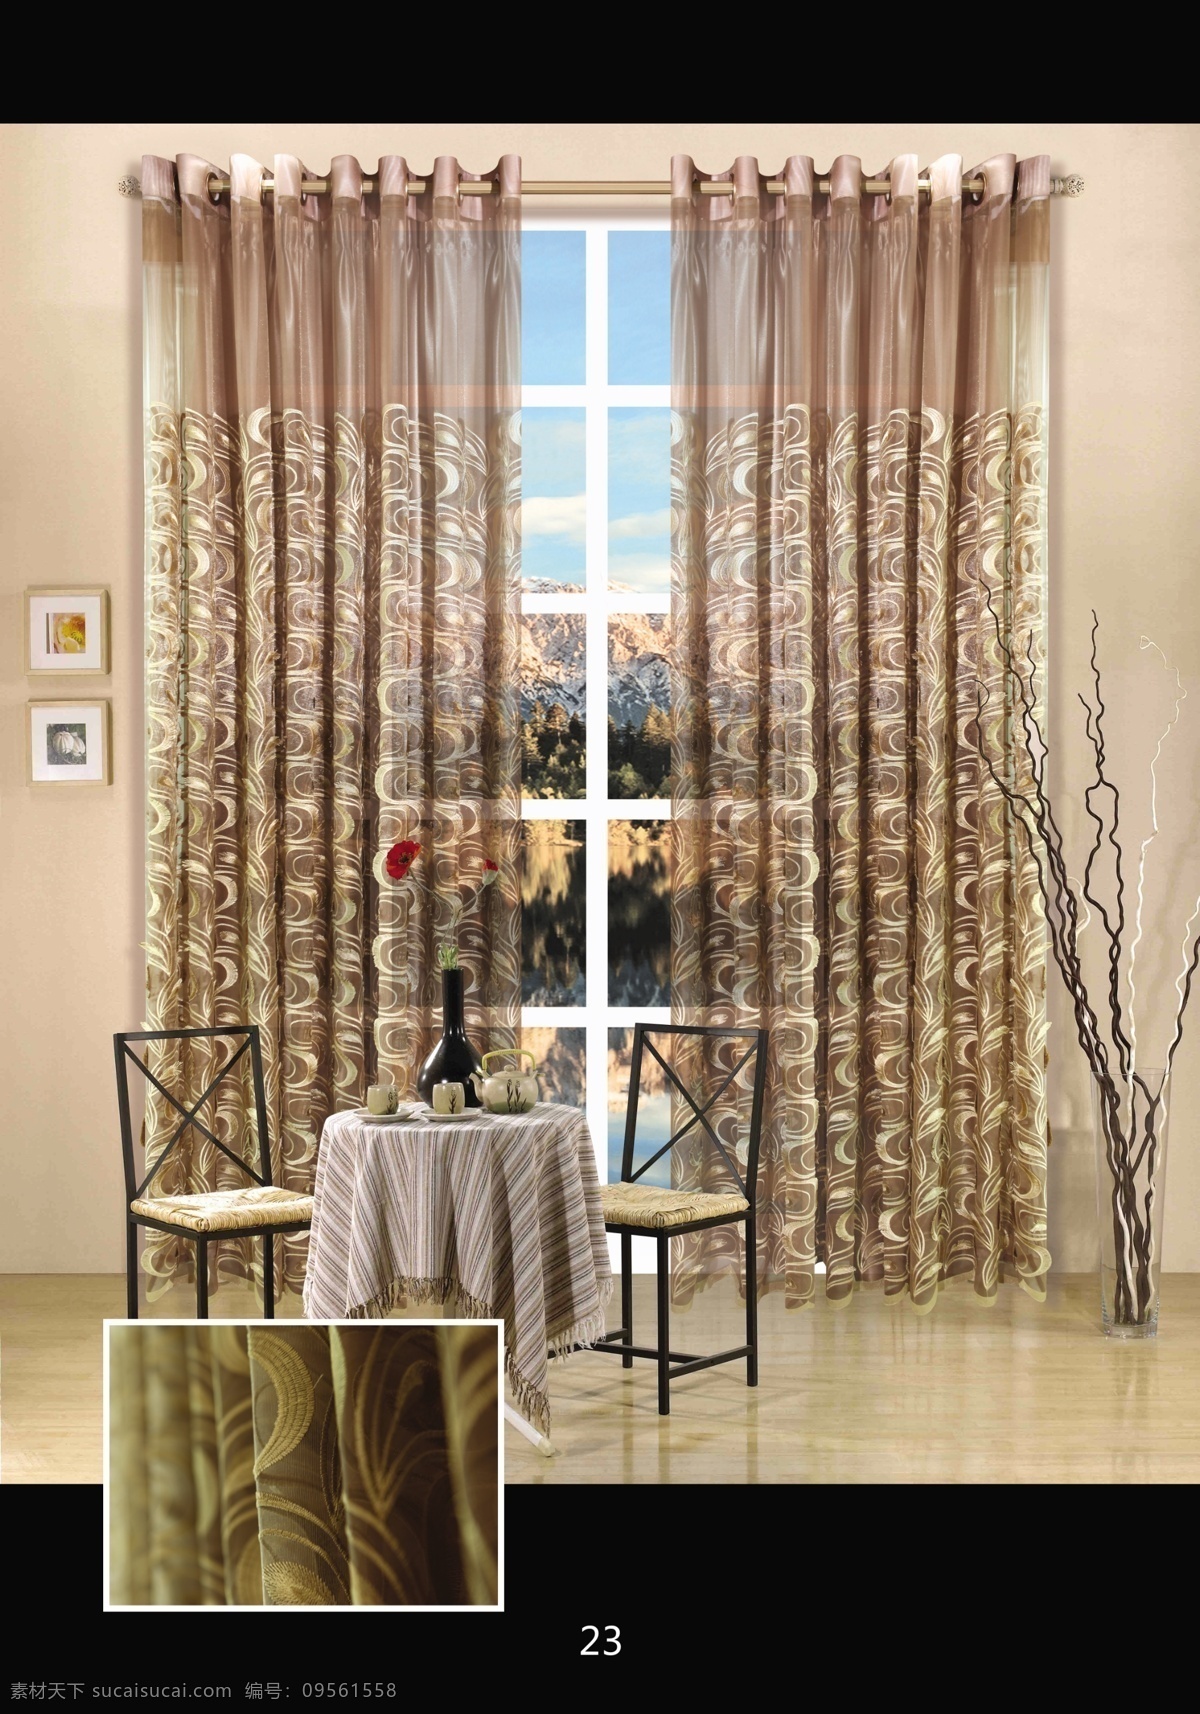 窗帘 窗帘效果图 窗帘布置 欧式窗帘 中式窗帘